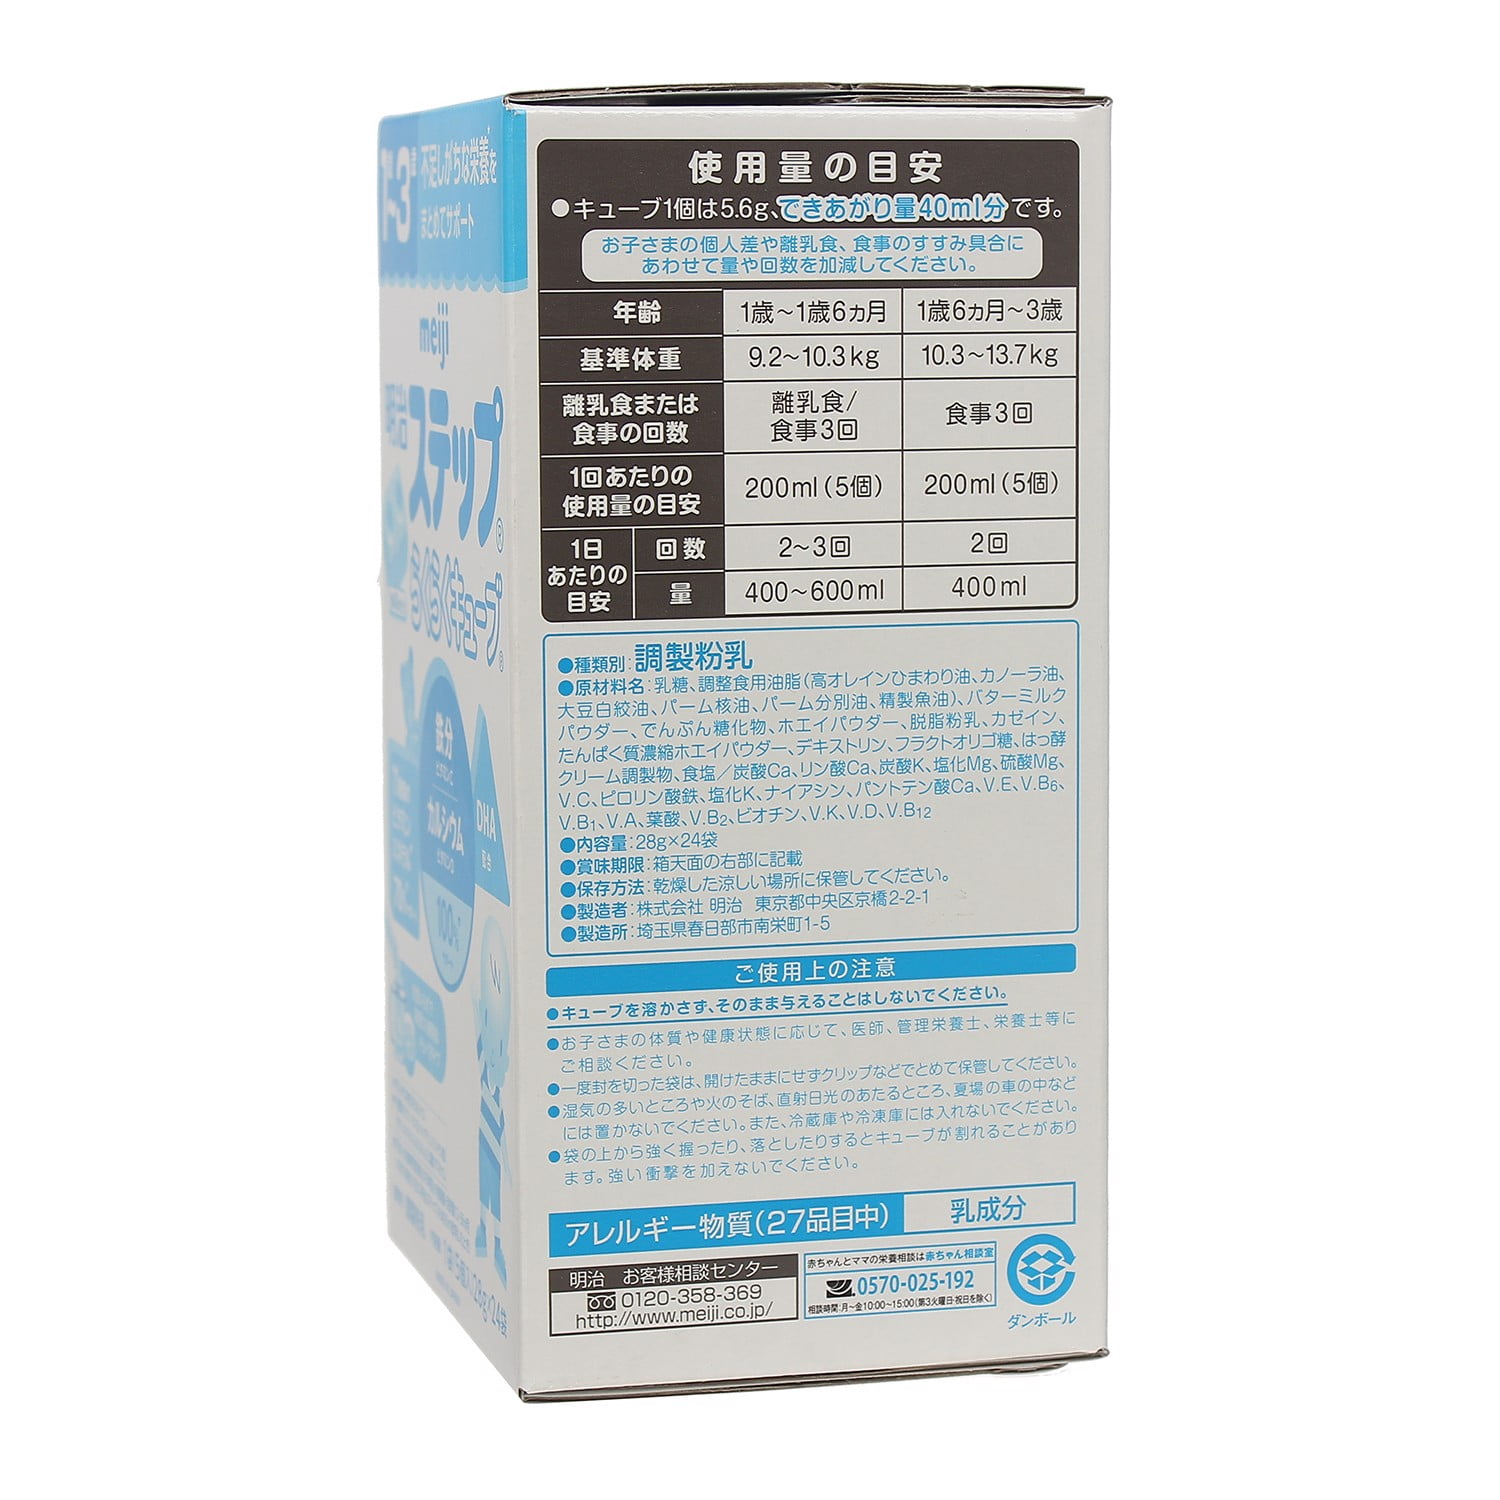 Những đặc điểm nổi bạt của sữa Meiji thanh 1-3Y